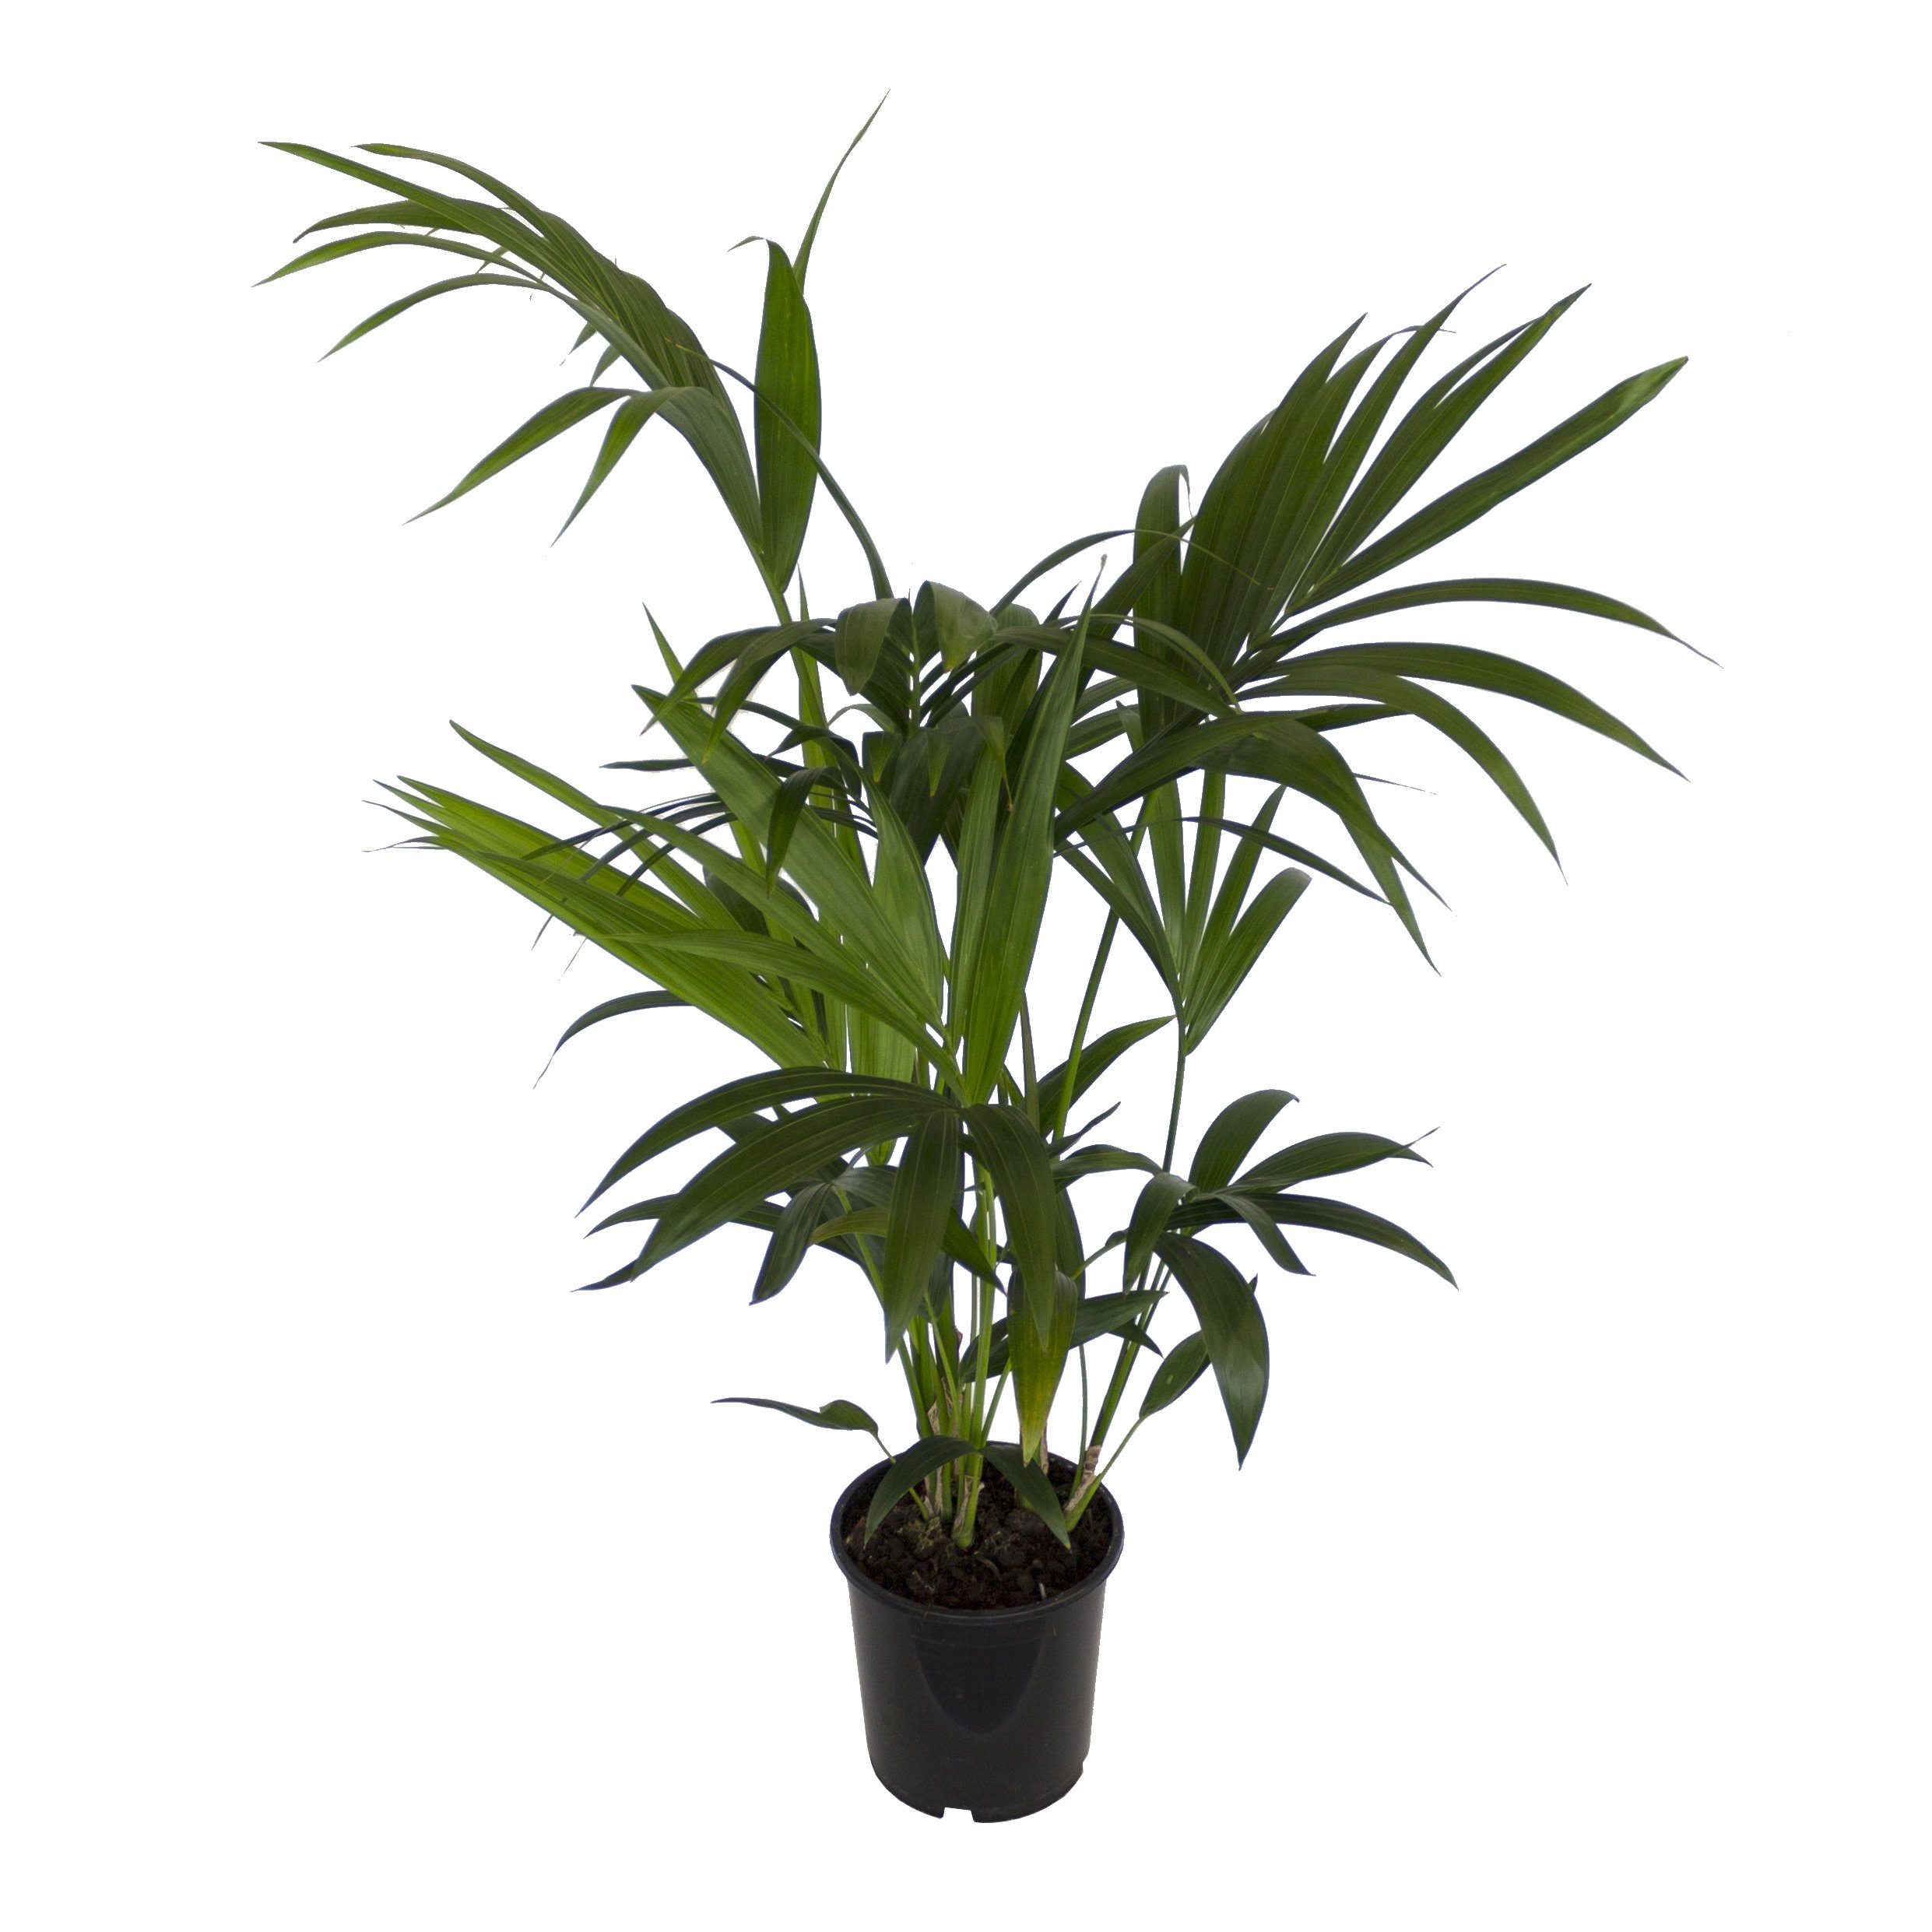 Dominik Blumen und Pflanzen, Zimmerpflanzen Kentia-Palme, Howea forsteriana, 1 Pflanze, 3 l Topf, ca.60-80 cm hoch